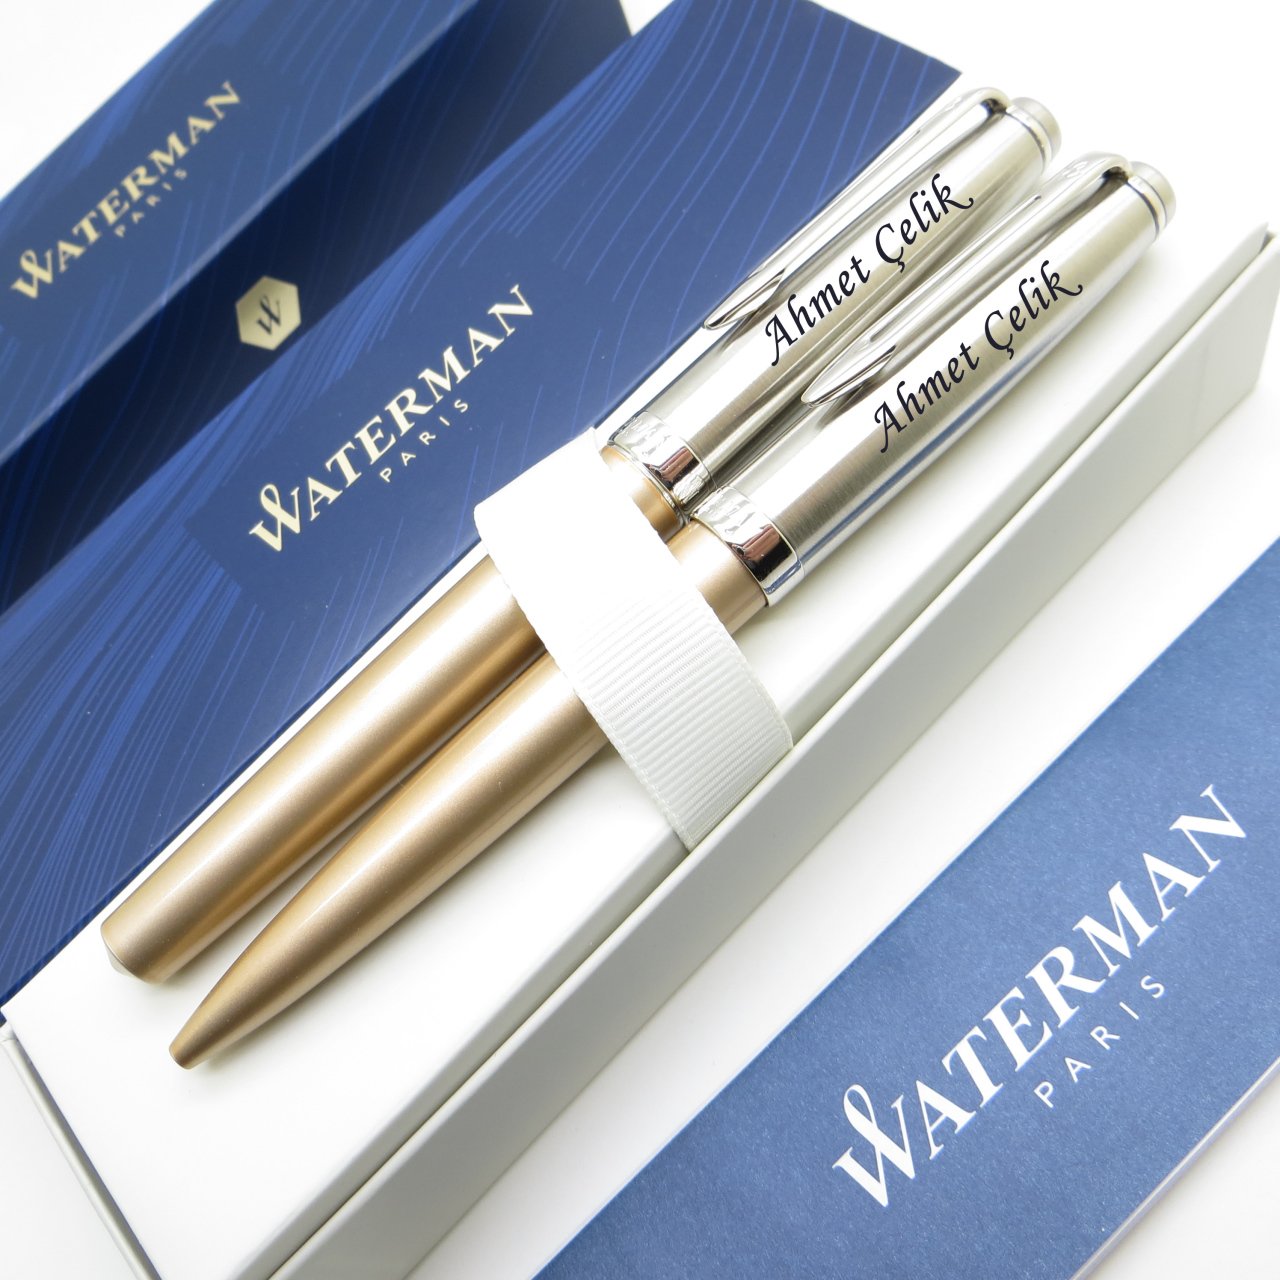 Waterman Embleme Deluxe Altın Dolma Kalem + Tükenmez Kalem Set | İsme Özel Kalem | Hediye Kalem